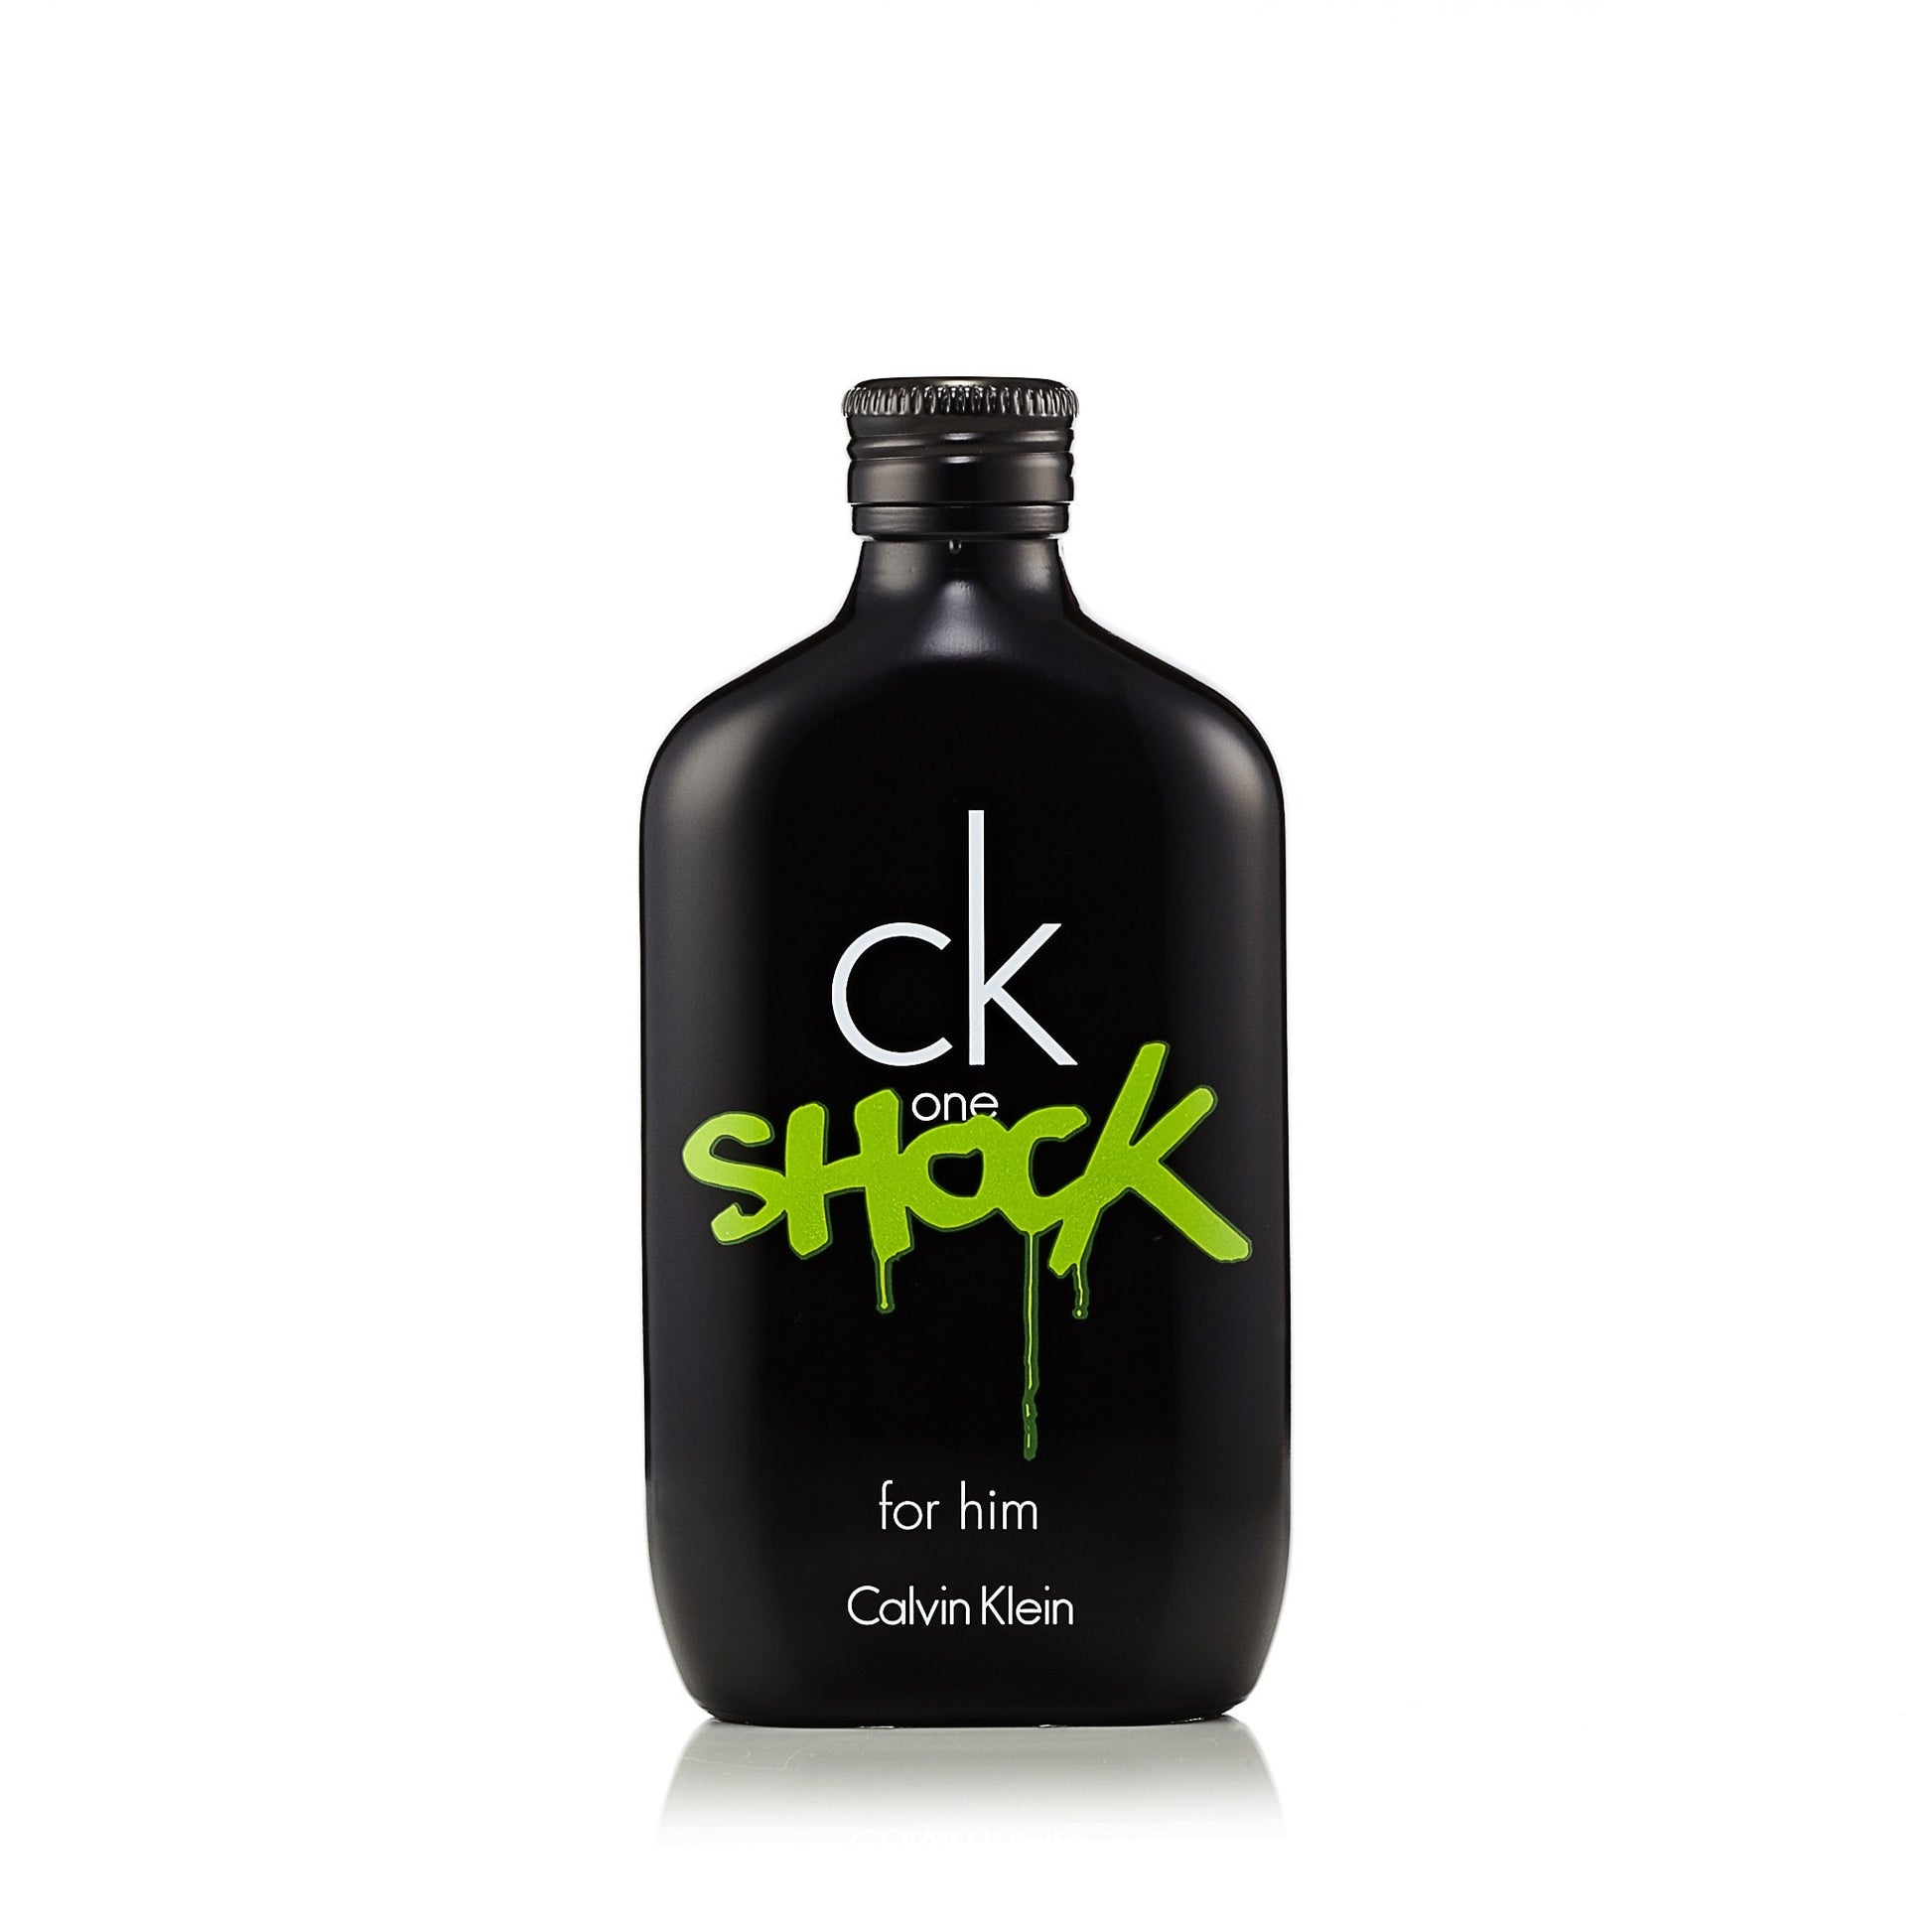 CK One Shock Eau de Toilette Spray for Men by Calvin Klein 6.7 oz. Click to open in modal